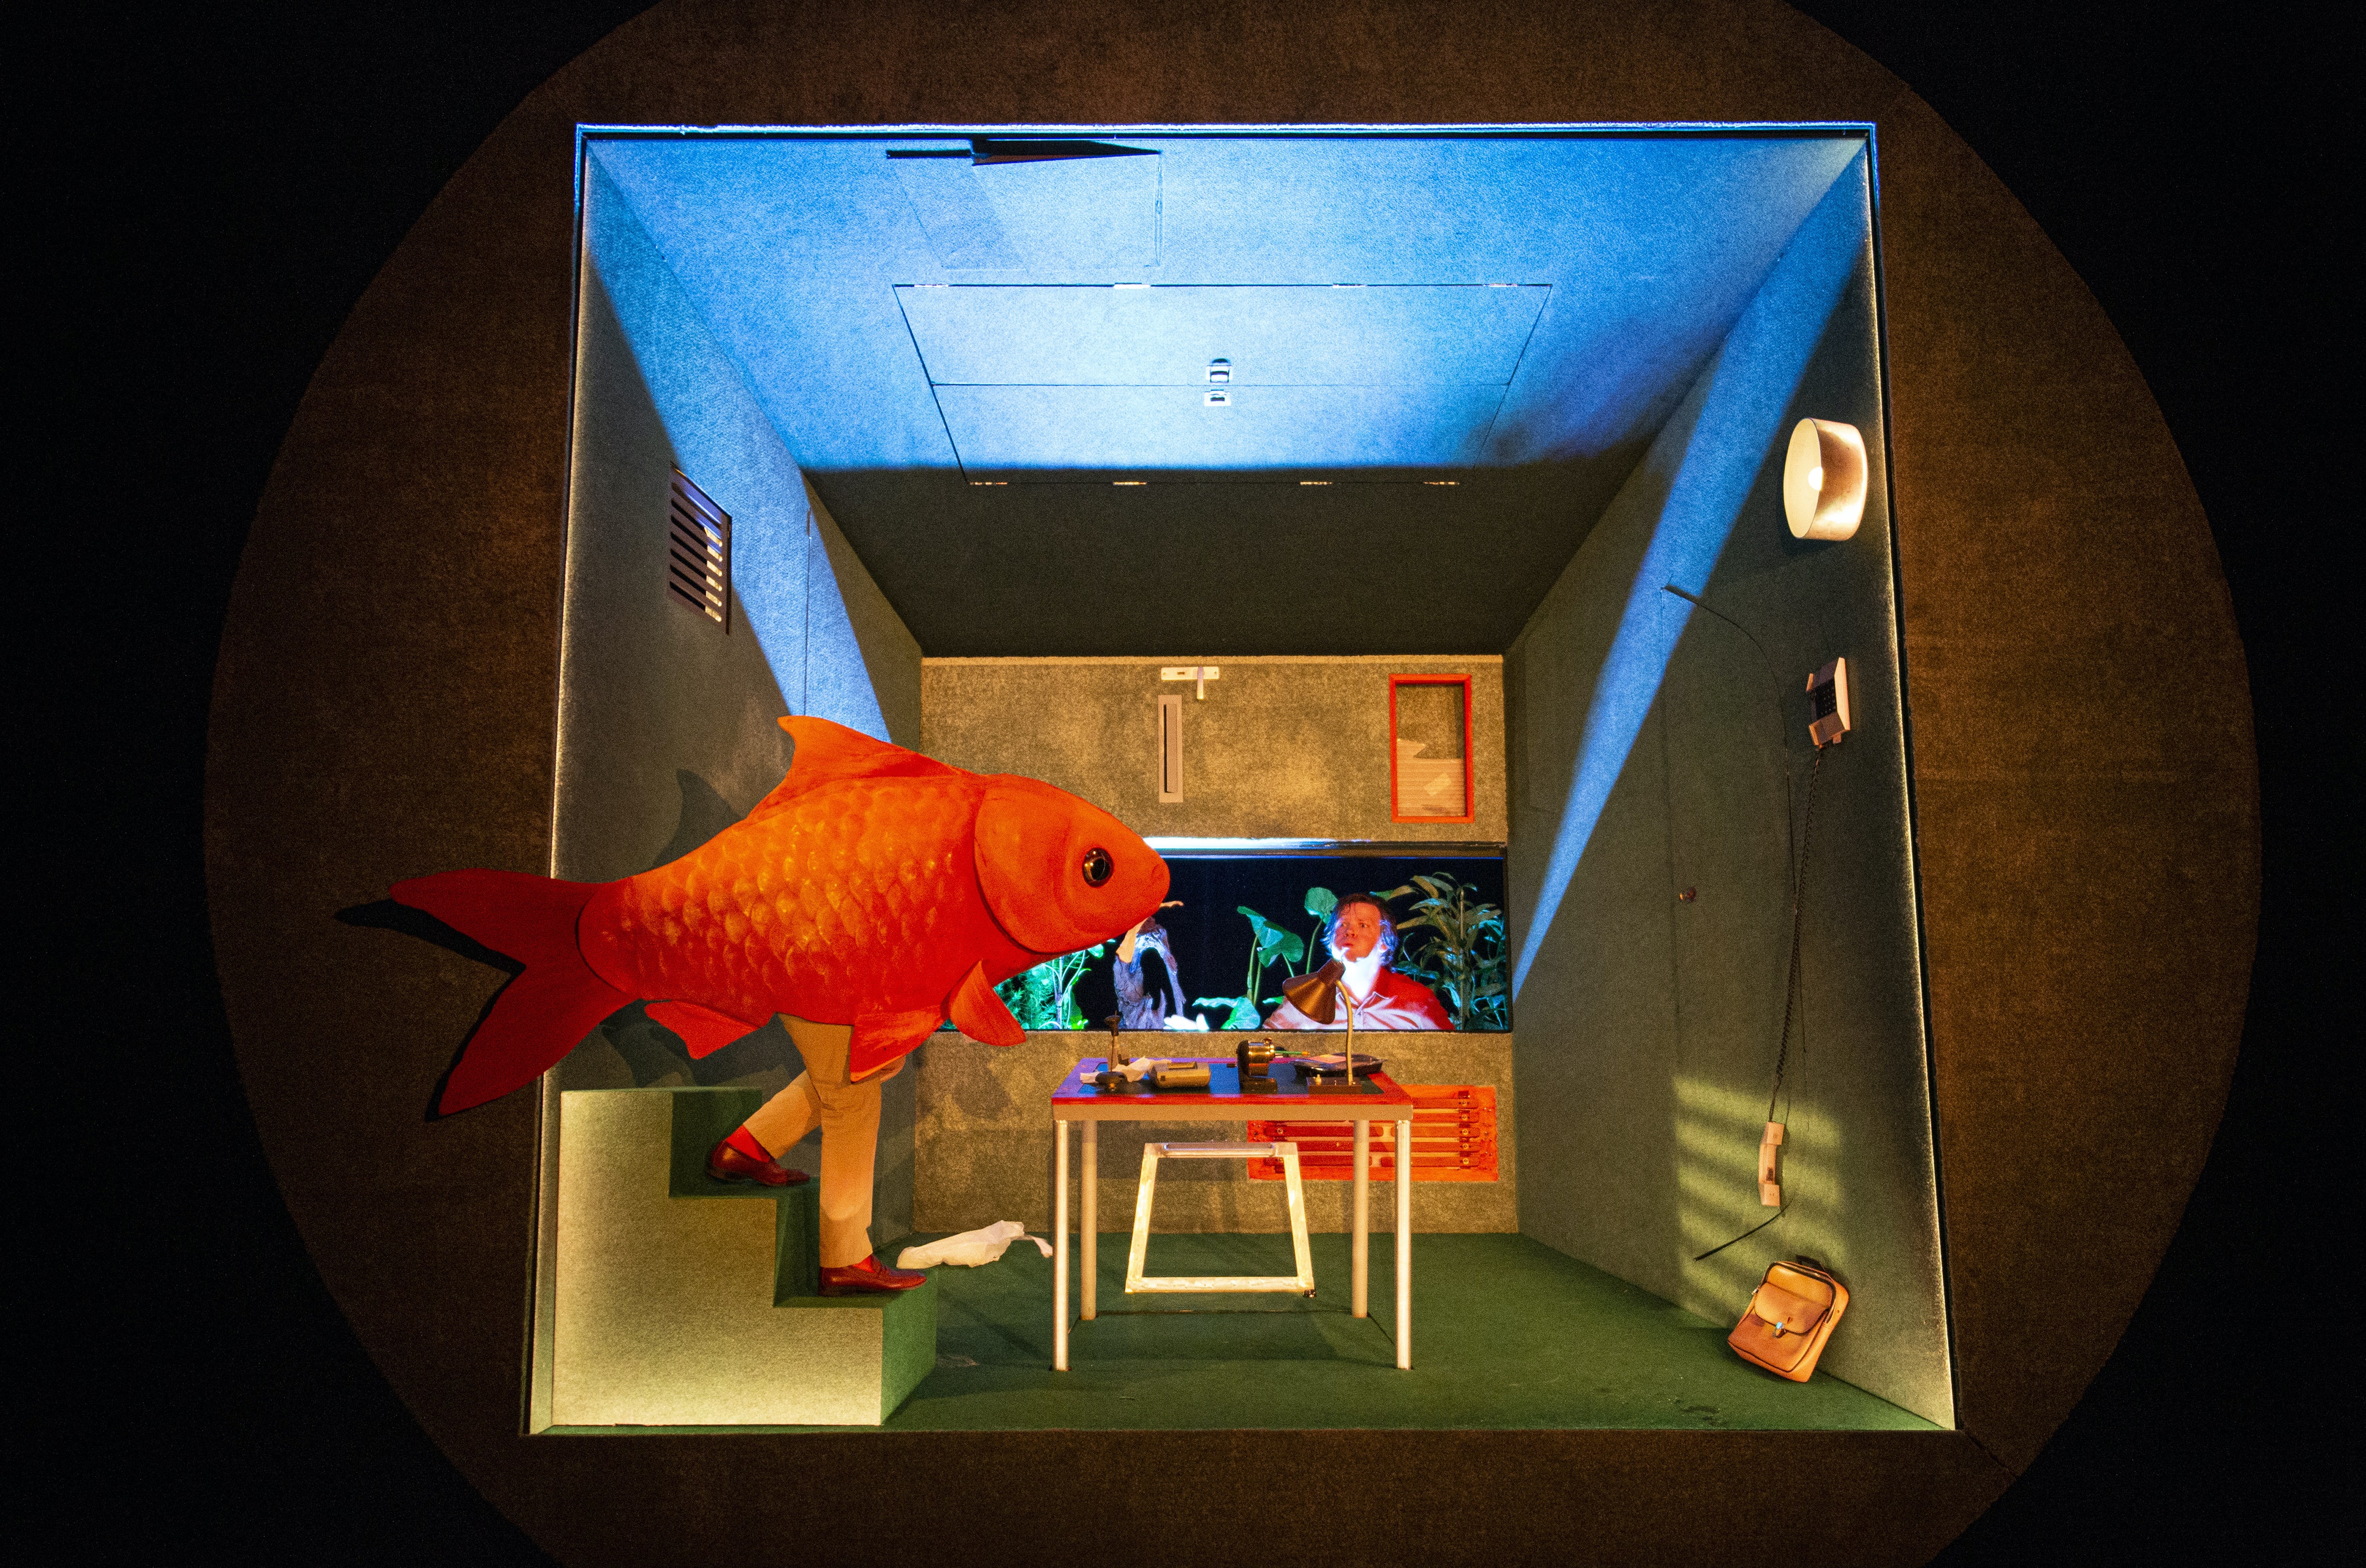 Fotografia a cores. No interior da pequena casa, um peixe gigante come as faturas que estão em cima da mesa. É observado pelo intérprete, espantado, preso dentro de um aquário.